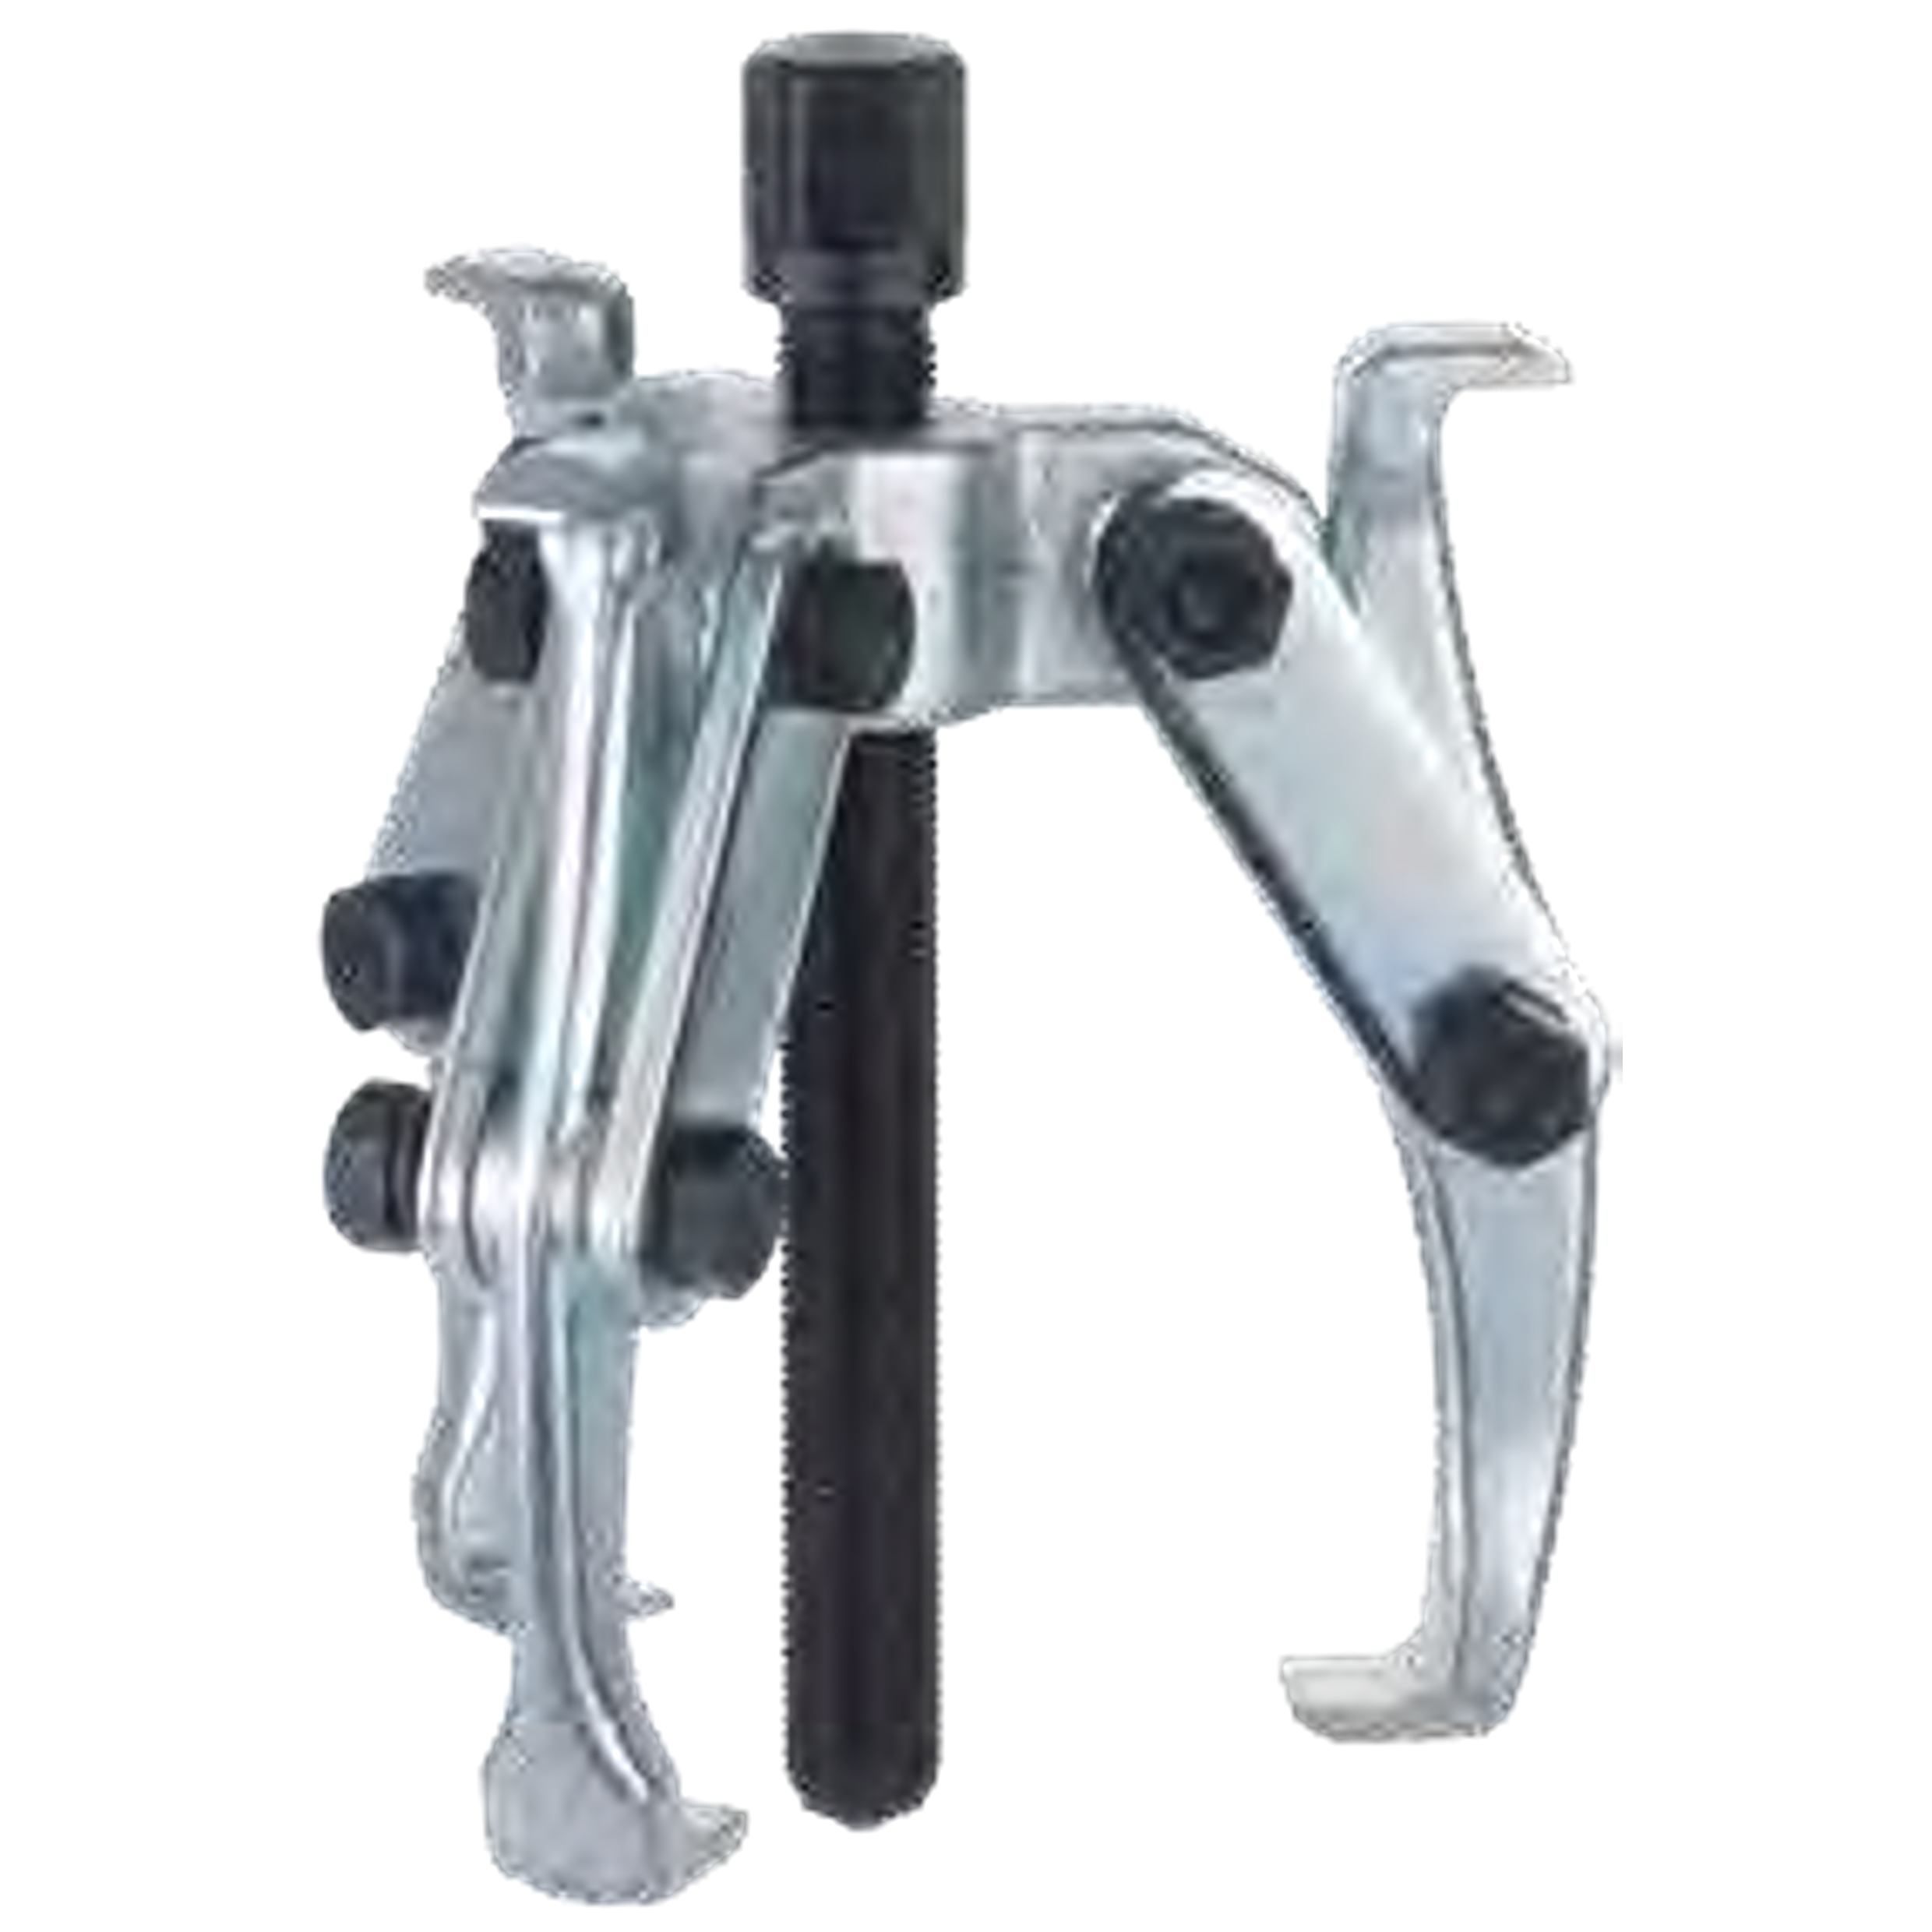 NEXUS 133 3-Arm Puller Self-Locking Strap - Premium 3-Arm Puller Self-Locking Strap from NEXUS - Shop now at Yew Aik.